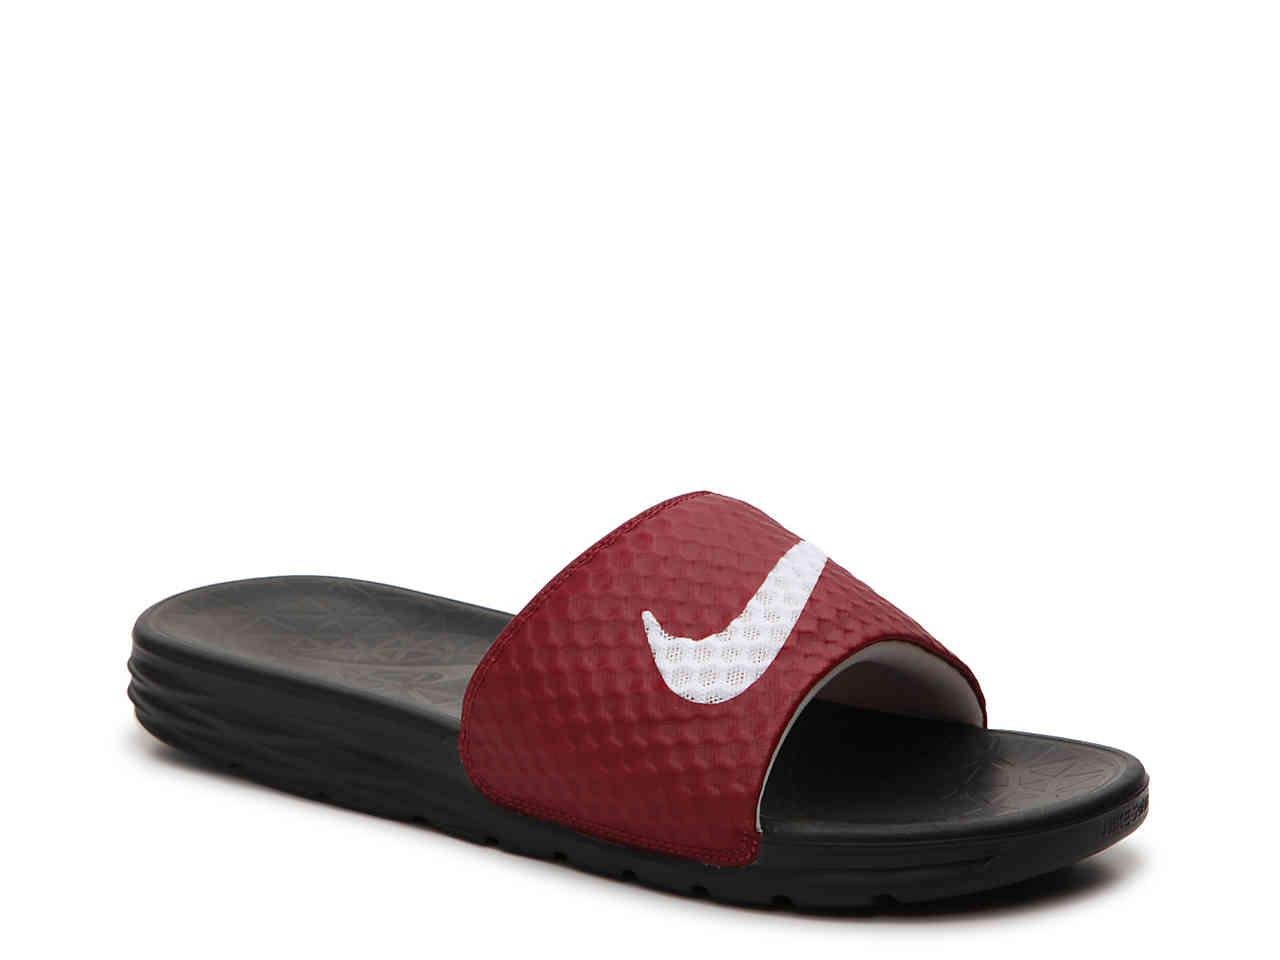 Nike Synthetic Benassi Solarsoft 2 Slide Sandal in Maroon/White